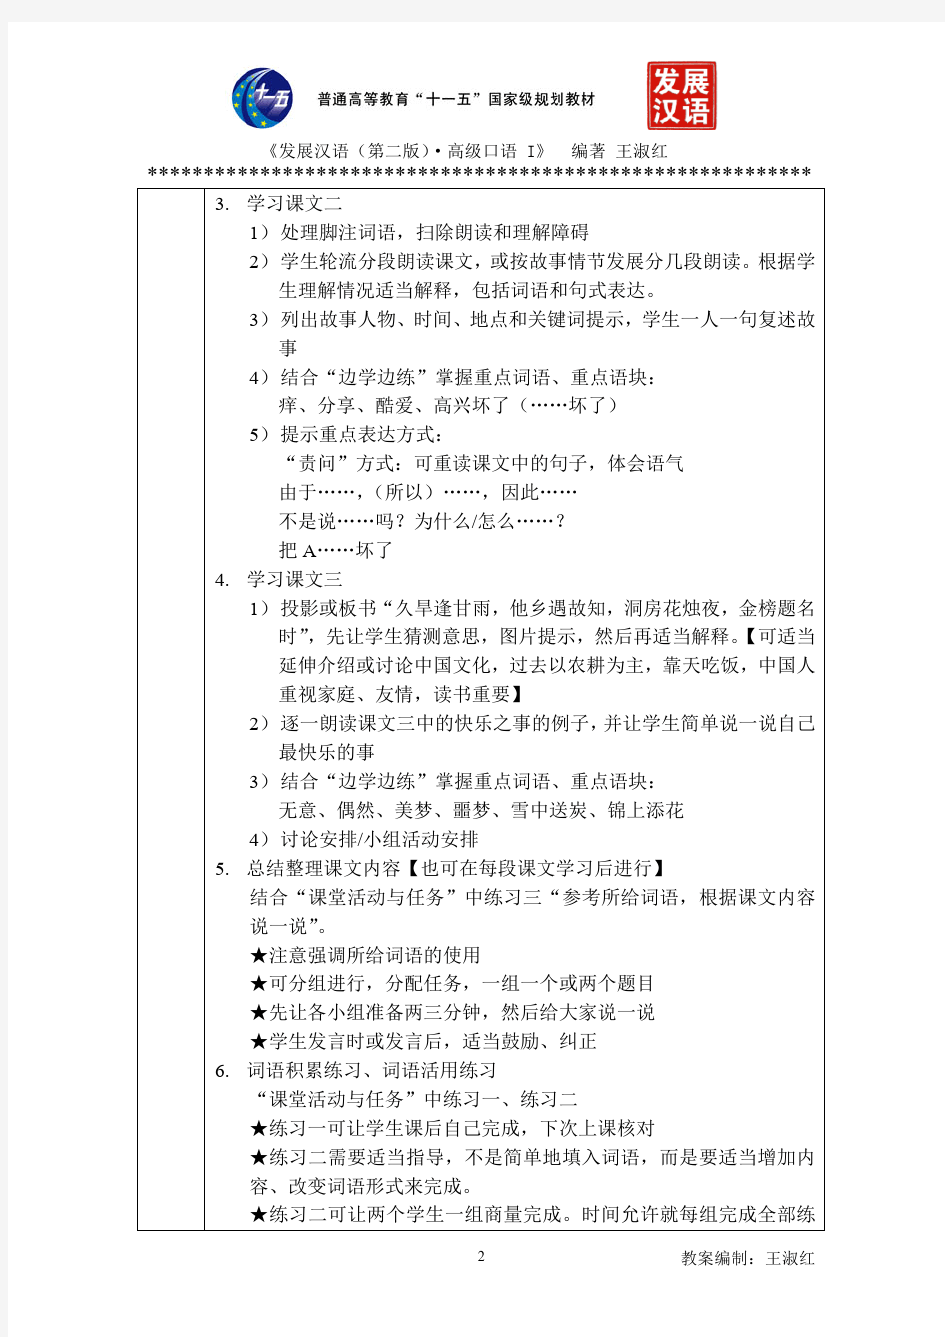 发展汉语(第二版)高级口语Ⅰ-1教案